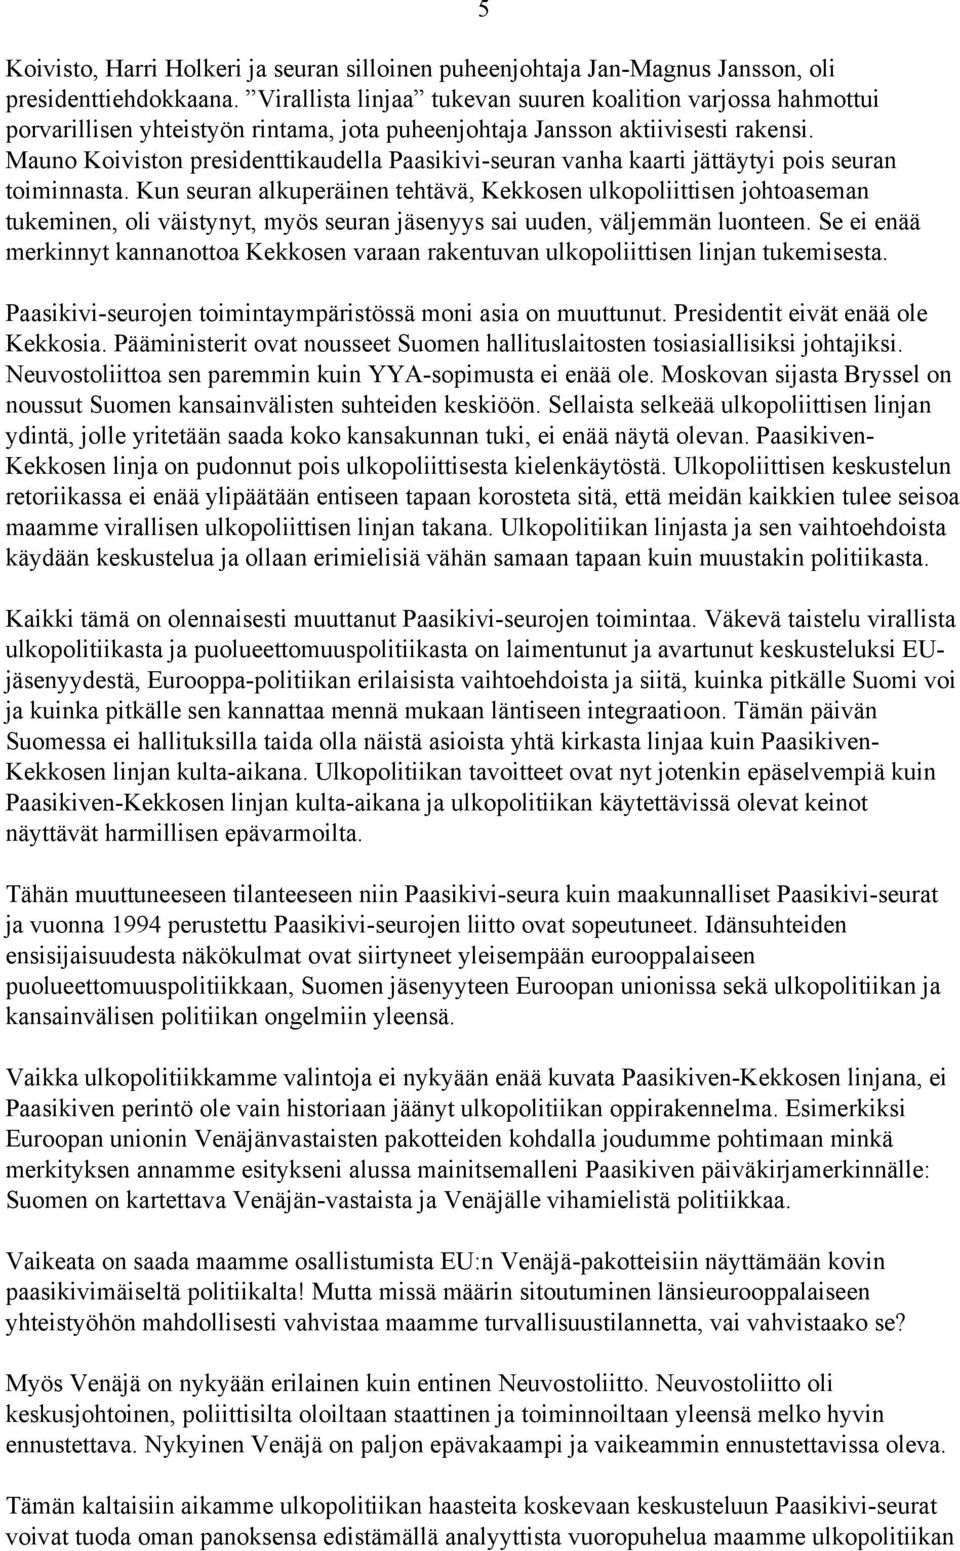 Mauno Koiviston presidenttikaudella Paasikivi-seuran vanha kaarti jättäytyi pois seuran toiminnasta.